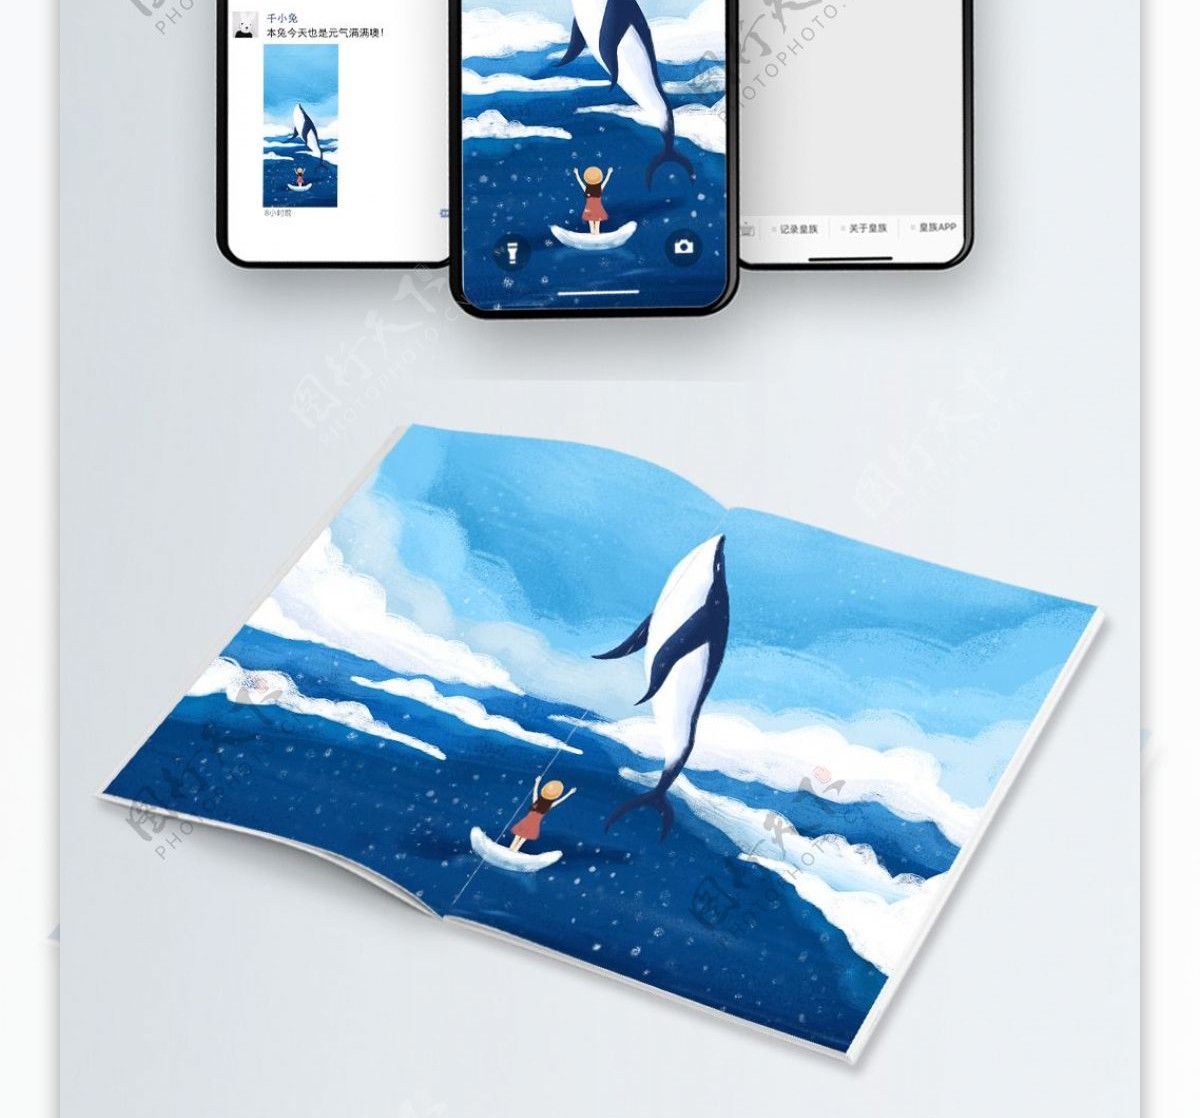 原创手绘插画蓝天白云大海与鲸